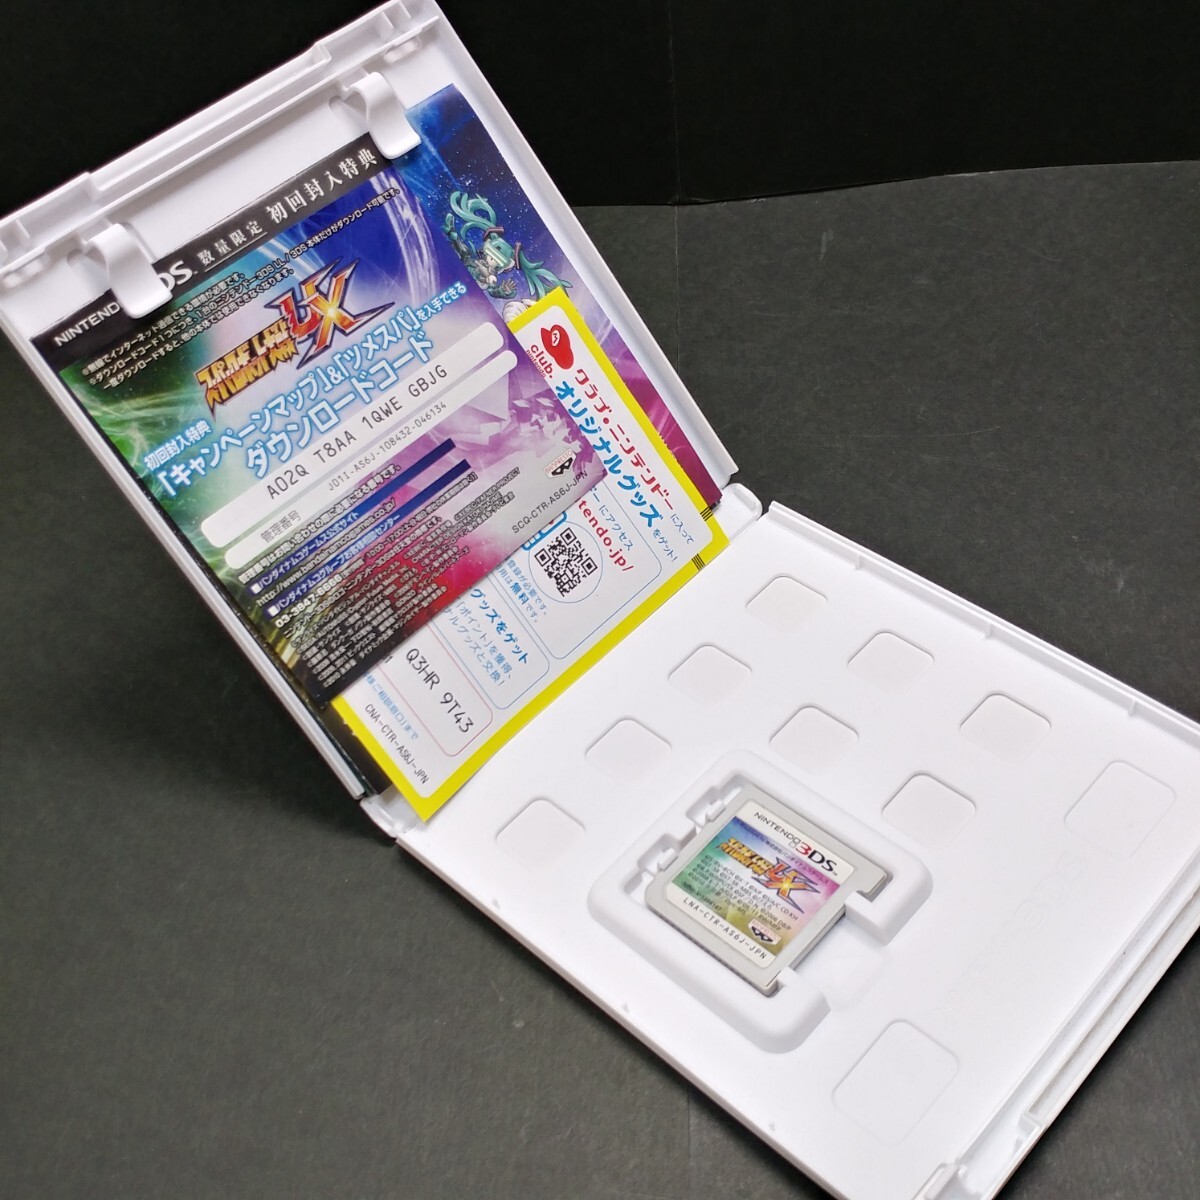 任天堂/ニンテンドー 3DS スーパーロボット大戦UX ソフト_画像4